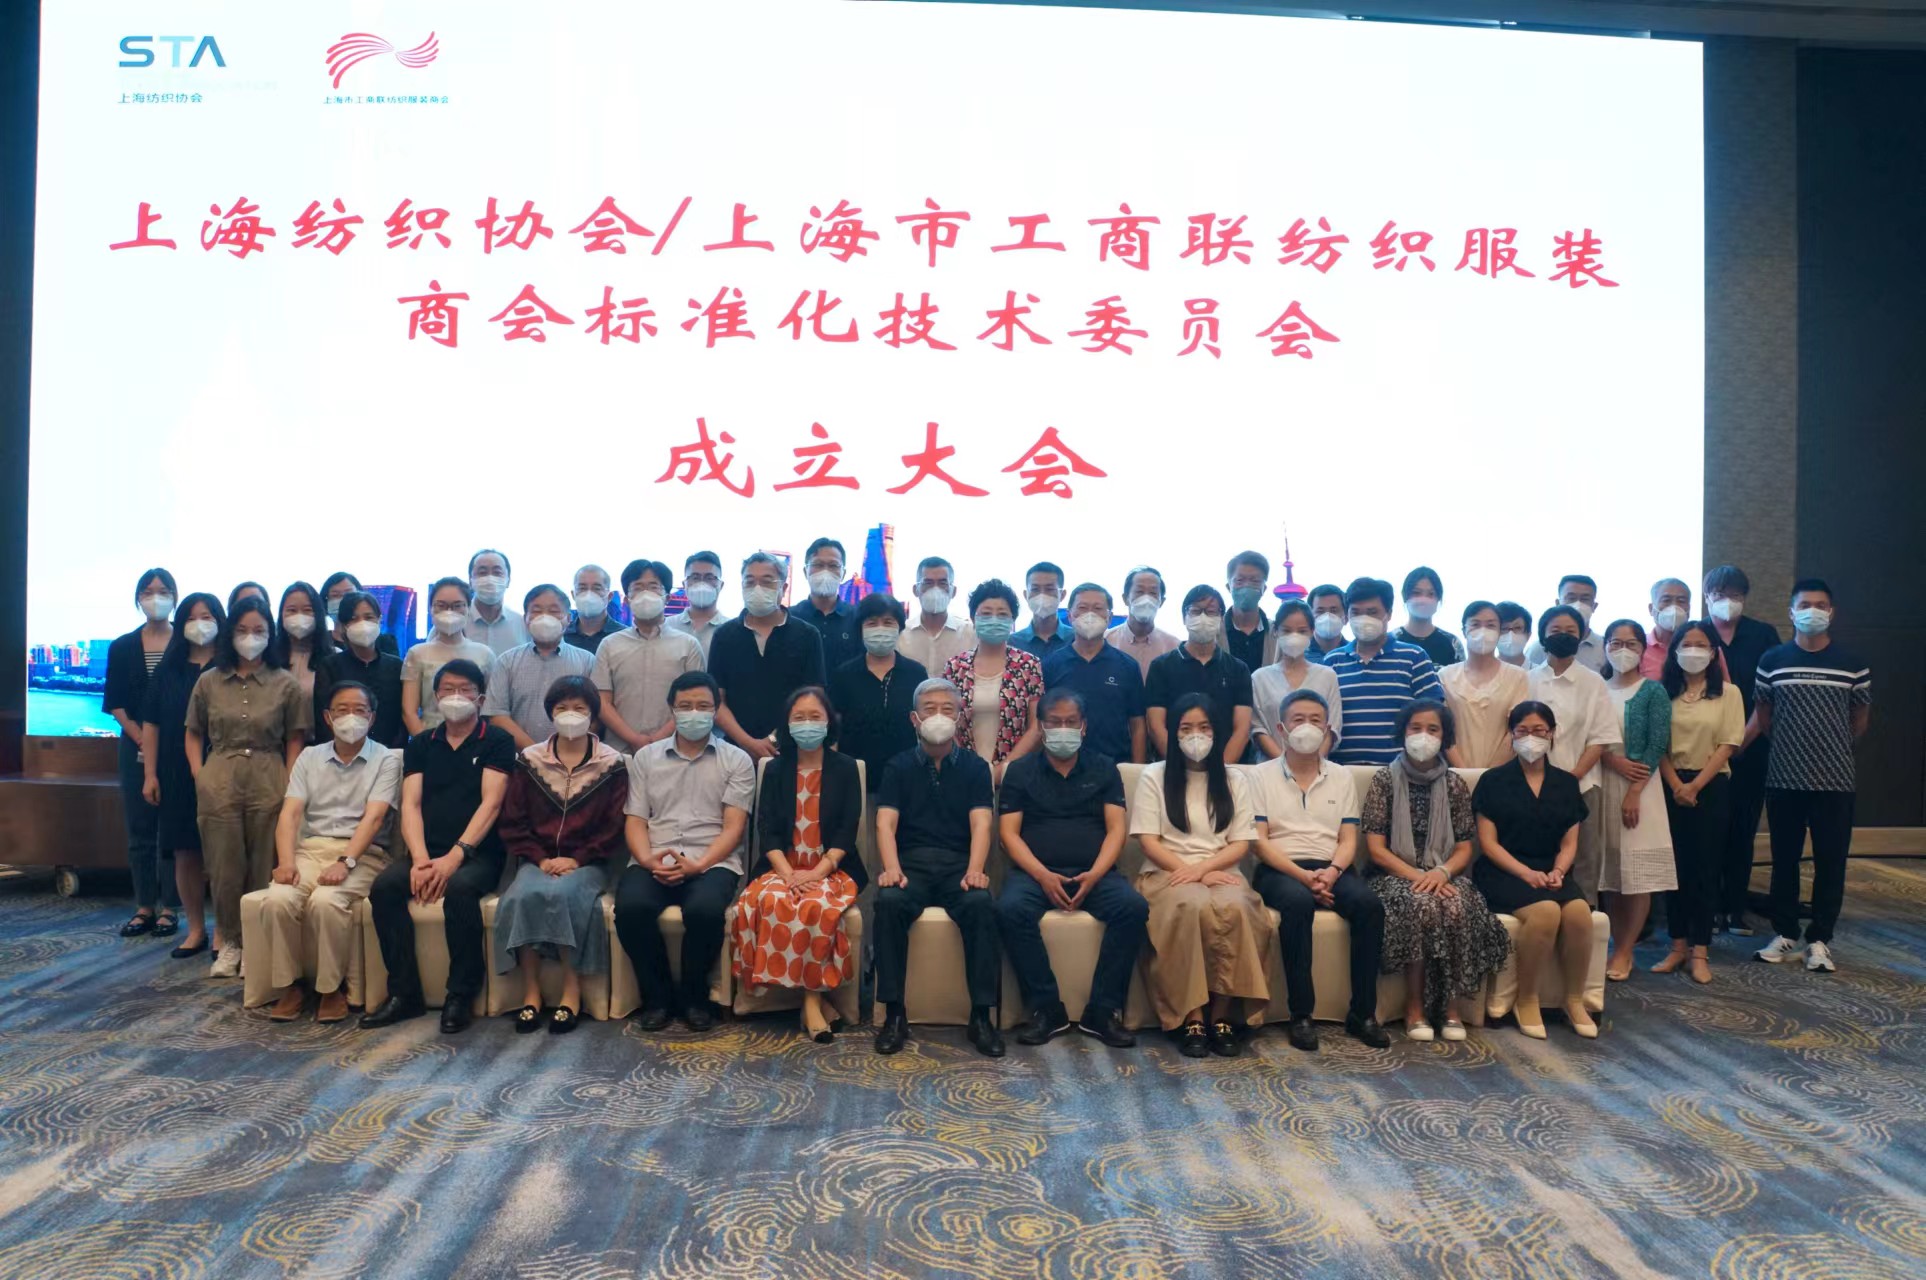 上海纺织协会/上海市工商联纺织服装商会标准化技术委员会成立大会暨上海纺织团标会第一次会议顺利召开